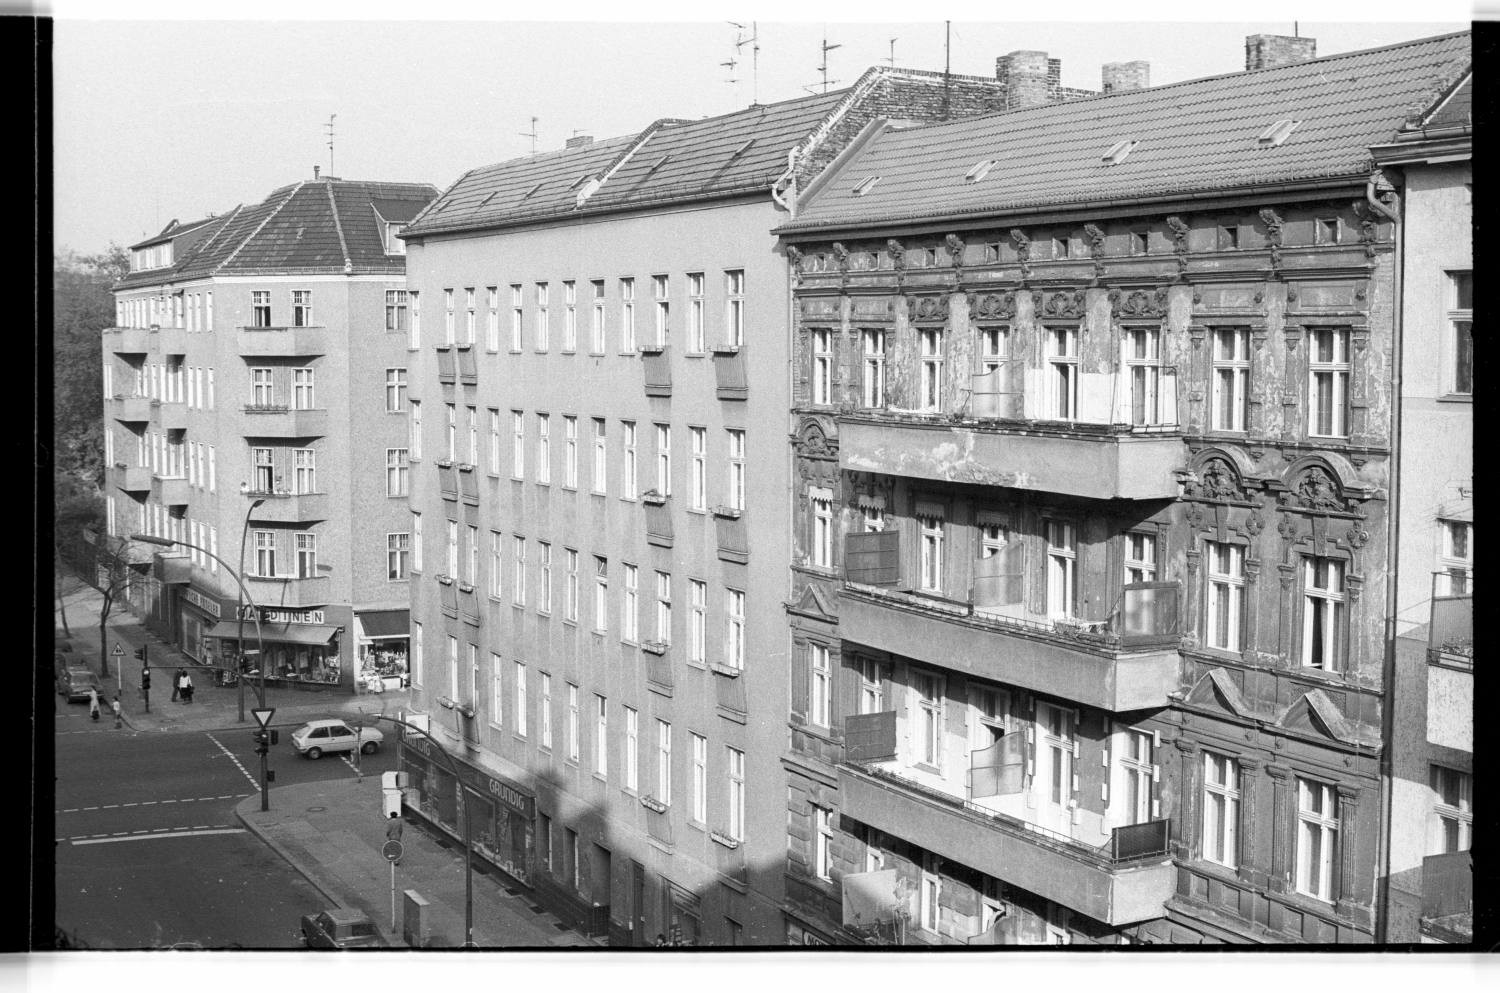 Kleinbildnegative: Mietshäuser, Belziger Straße, 1979 (Museen Tempelhof-Schöneberg/Jürgen Henschel RR-F)